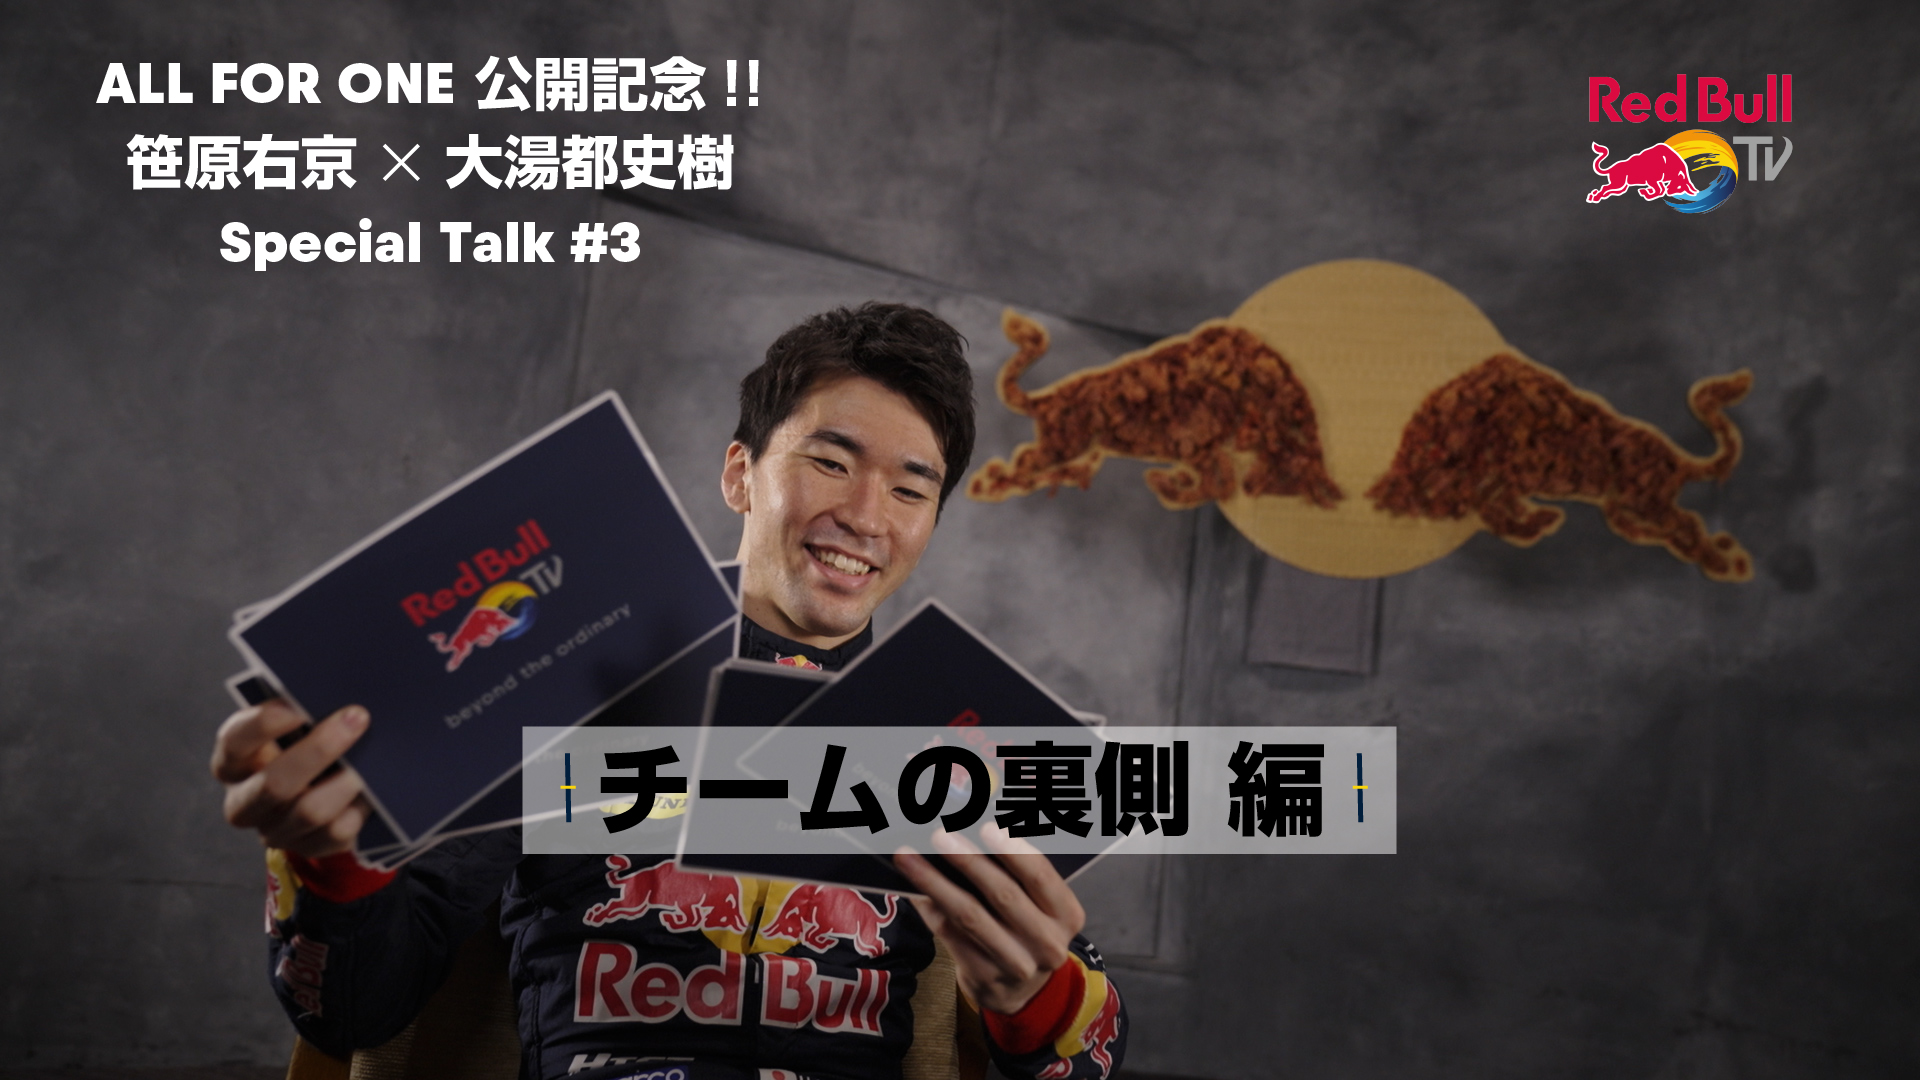 【SUPER GT】笹原右京×大湯都史樹 Special Talk #3「チームの裏側 編」